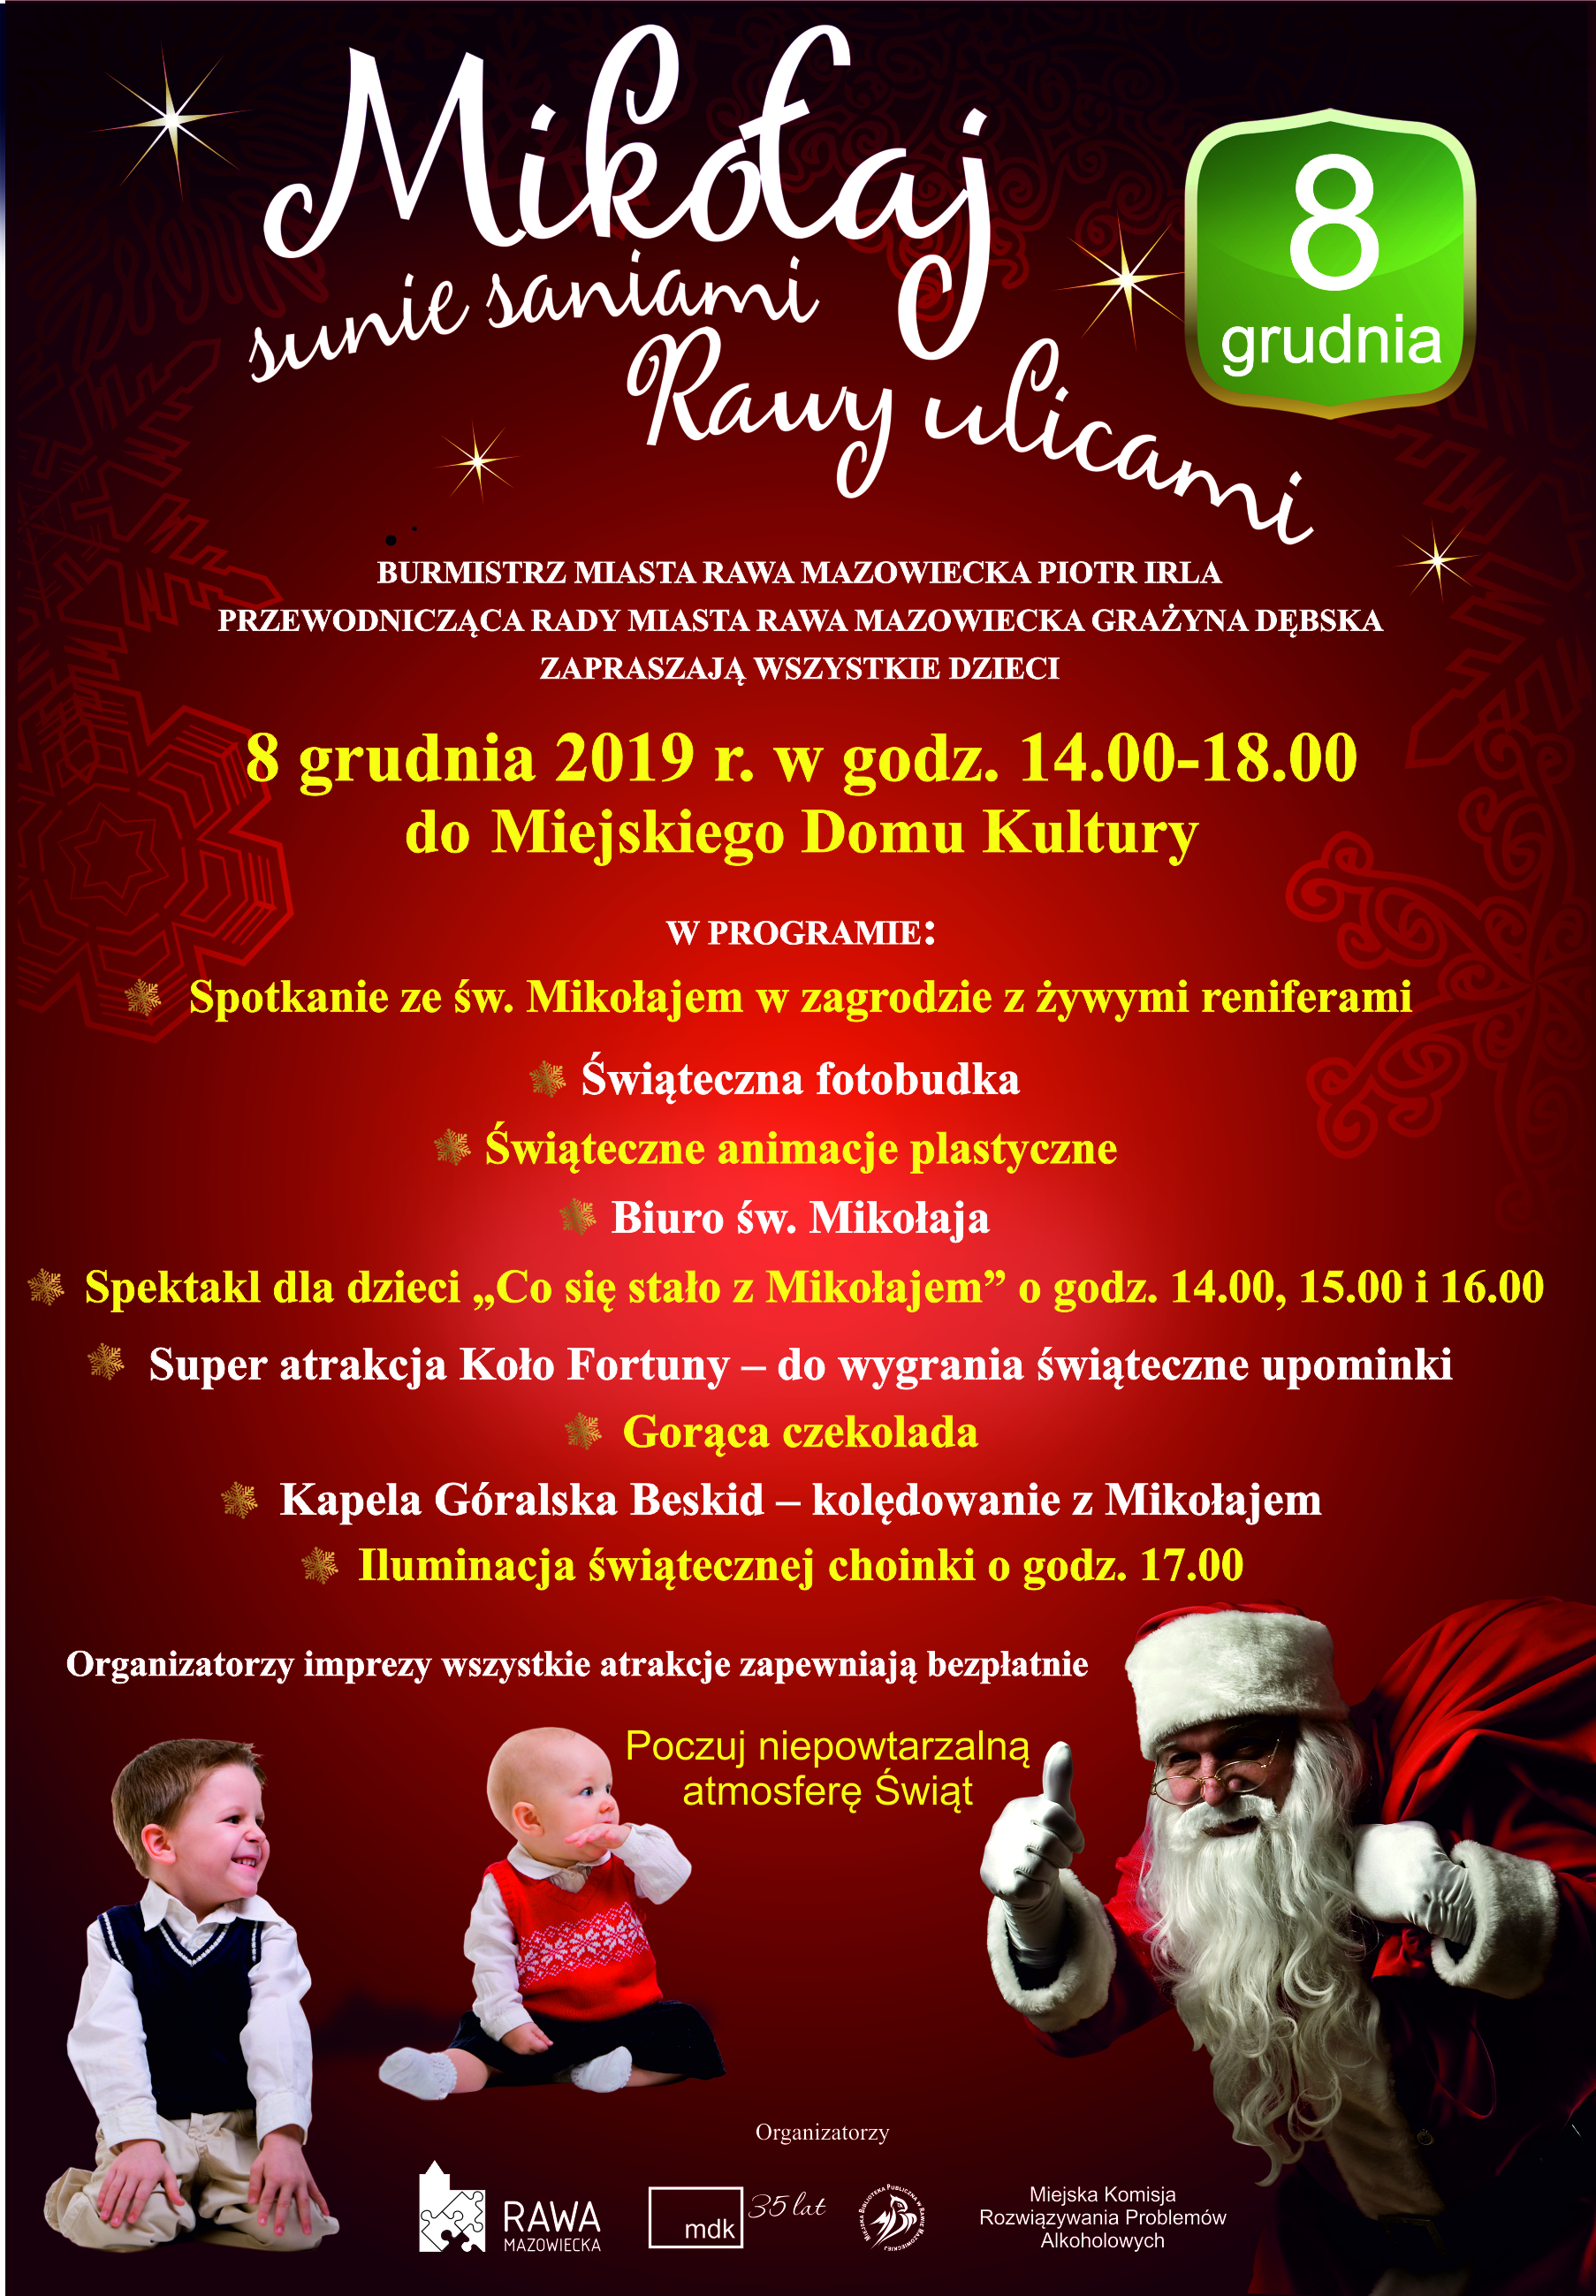 plakat wydarzenia "Mikołaj sunie saniami Rawy ulicami"